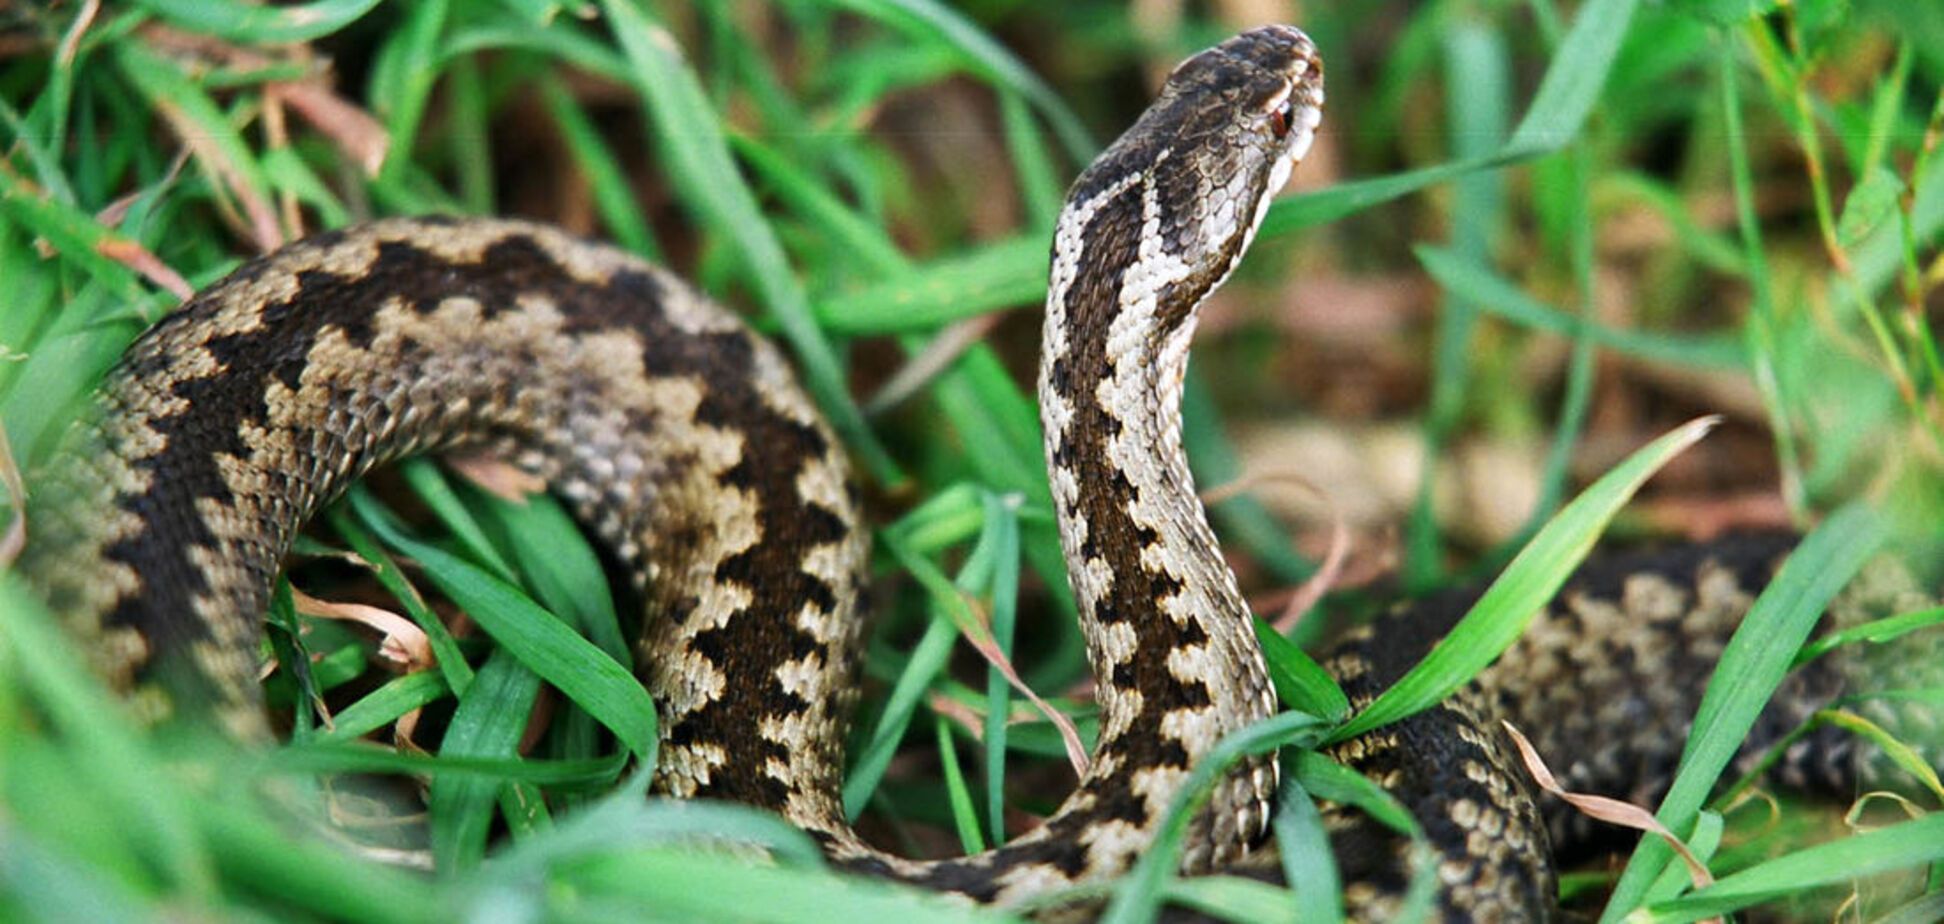 Як врятуватися від укусів змій під час відпочинку в лісі: інфографіка